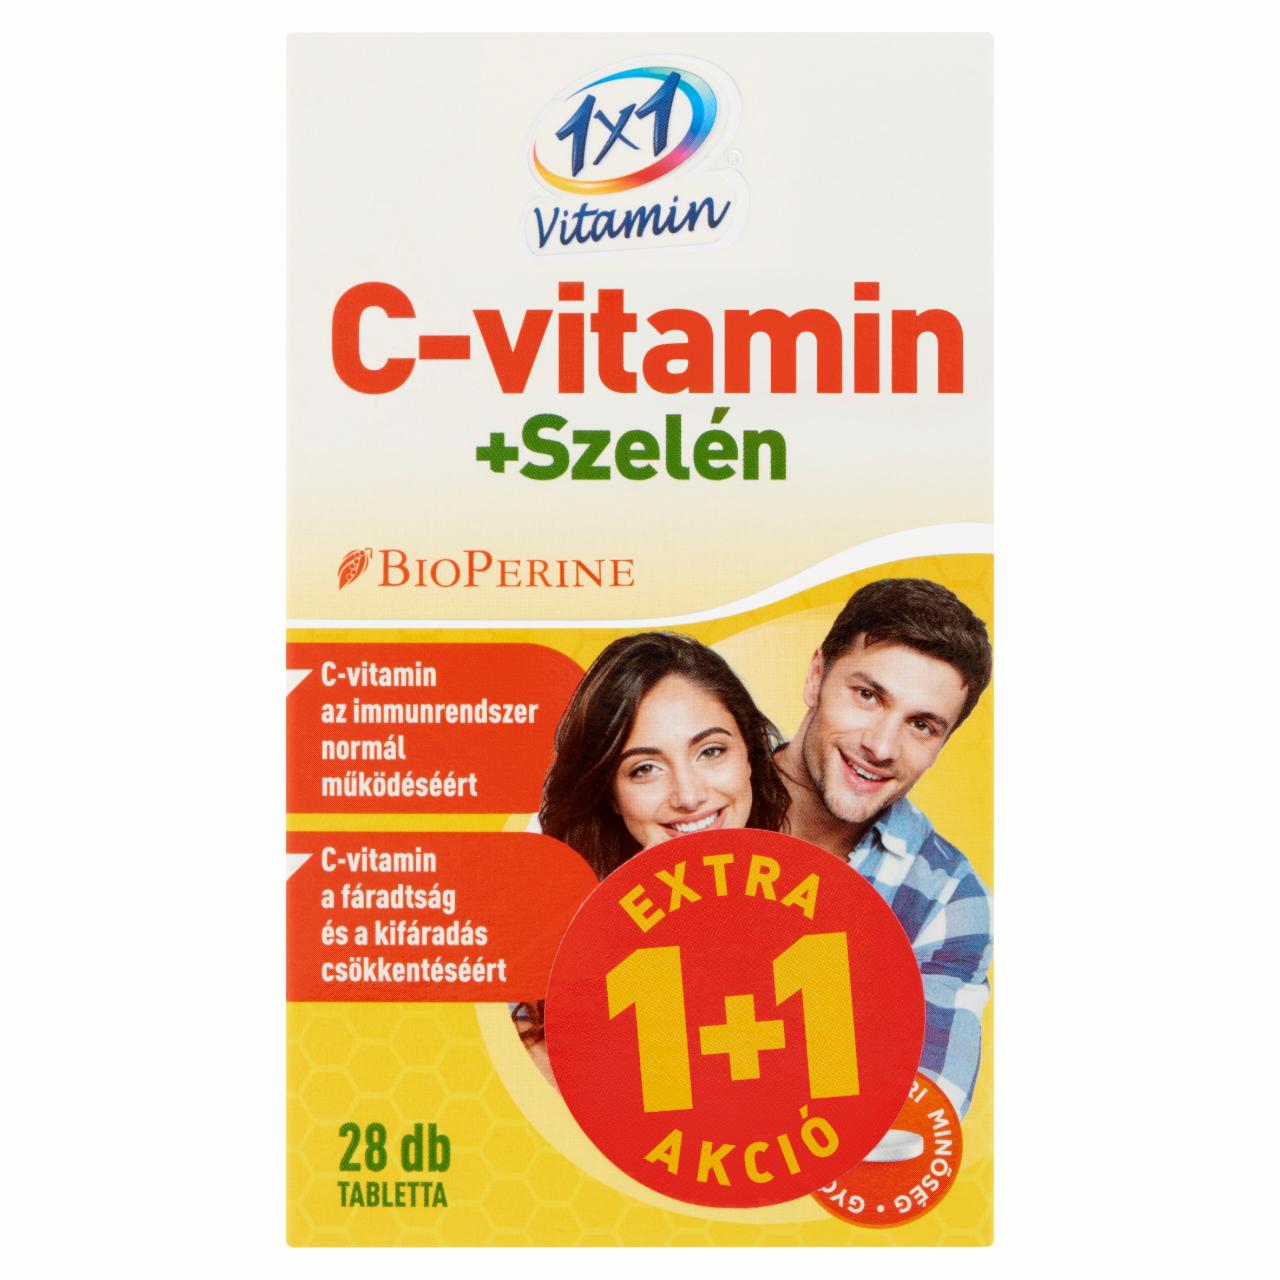 Képek - 1x1 Vitamin C-vitamin + Szelén étrend-kiegészítő filmtabletta 2 x 28 db